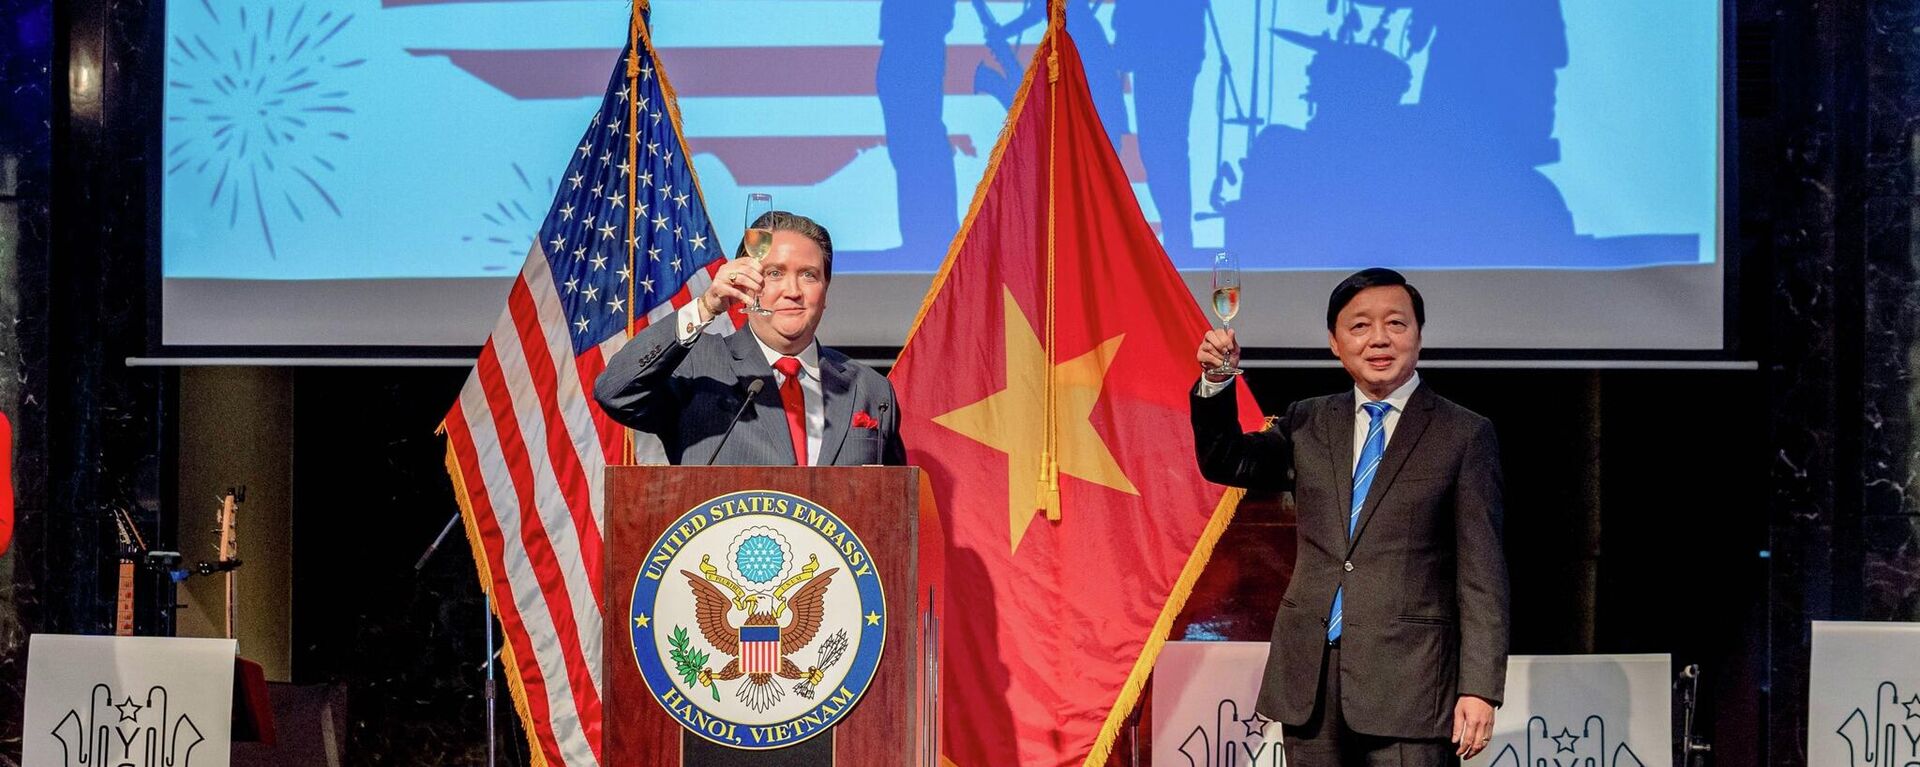 Đại sứ Hoa Kỳ tại Việt Nam Mark Knapper và Bộ trưởng Bộ Tài nguyên và Môi trường Việt Nam Trần Hồng Hà trong lễ kỷ niệm 246 năm Quốc khánh tại Đại sứ quán Hoa Kỳ tại Hà Nội, Việt Nam - Sputnik Việt Nam, 1920, 09.07.2022